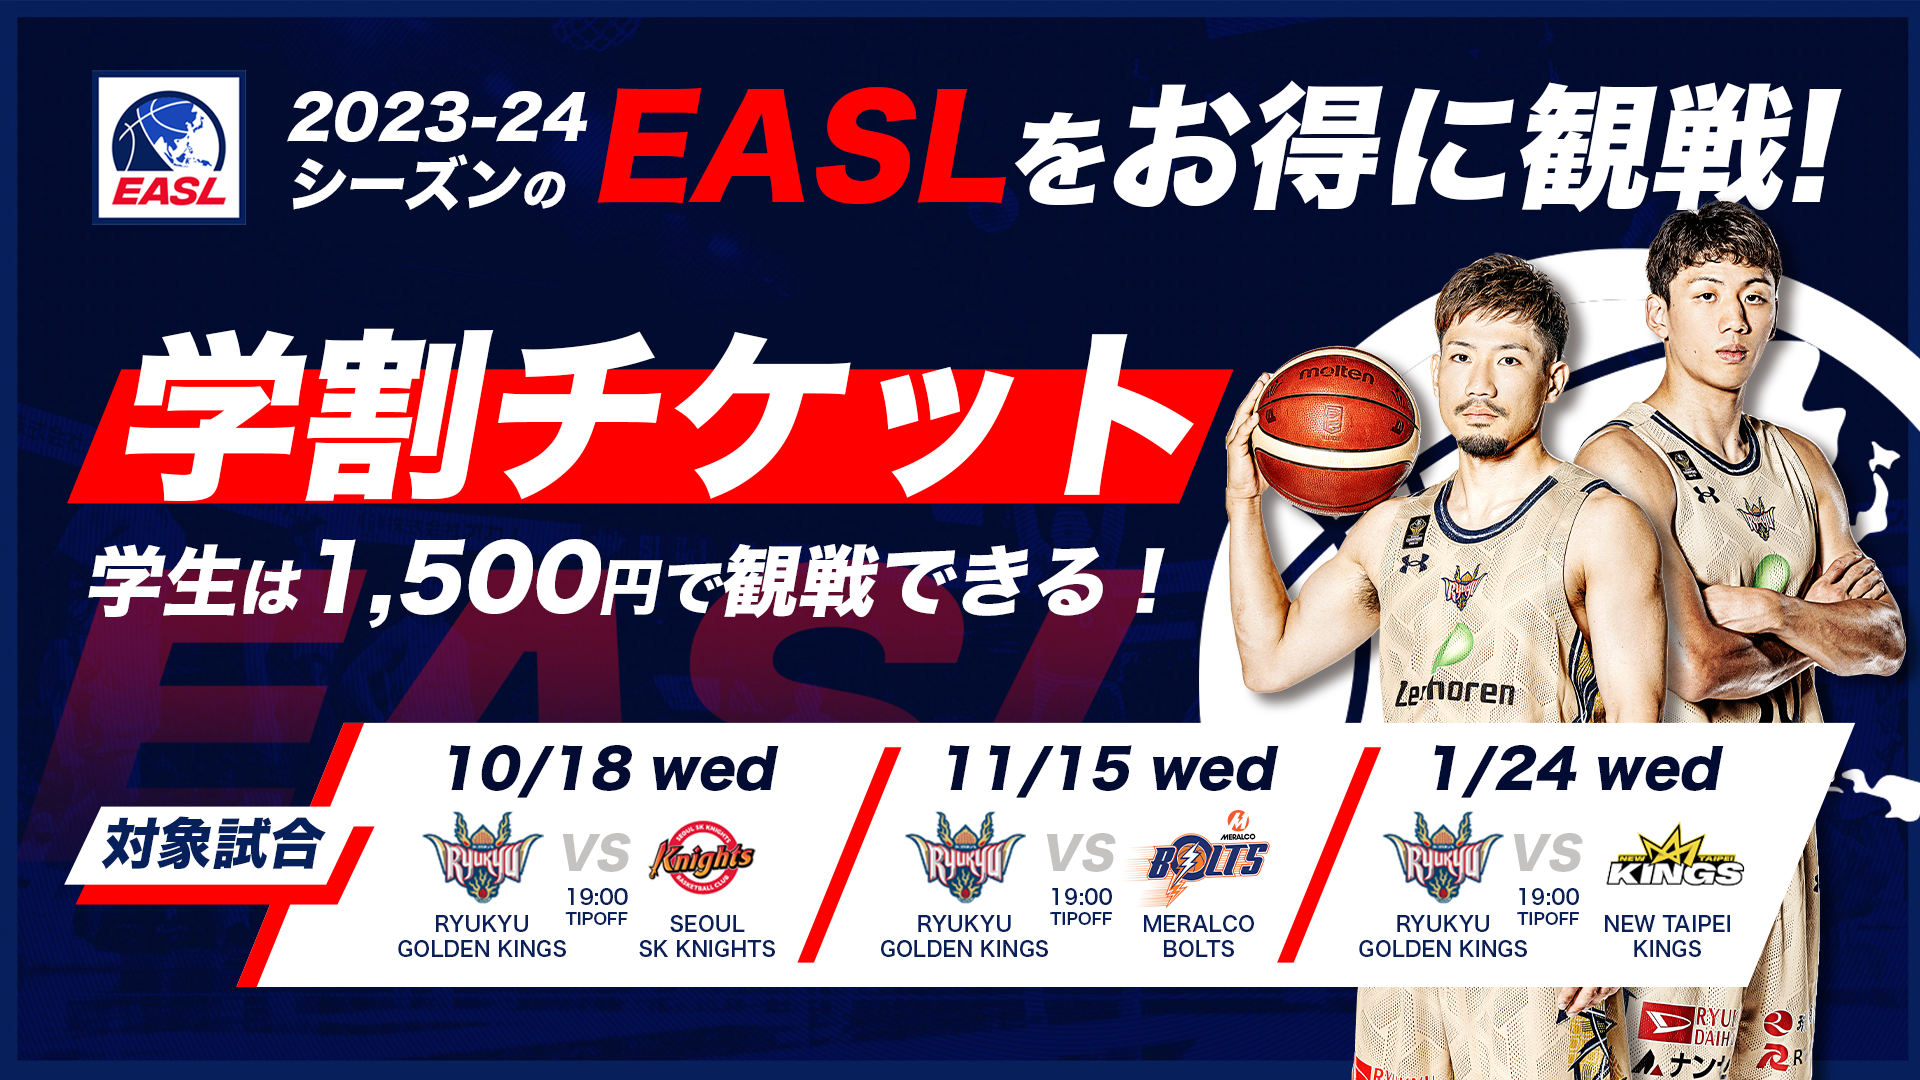 学生は1500円で試合観戦できる「EASL 学割チケット」が登場！ | 琉球 